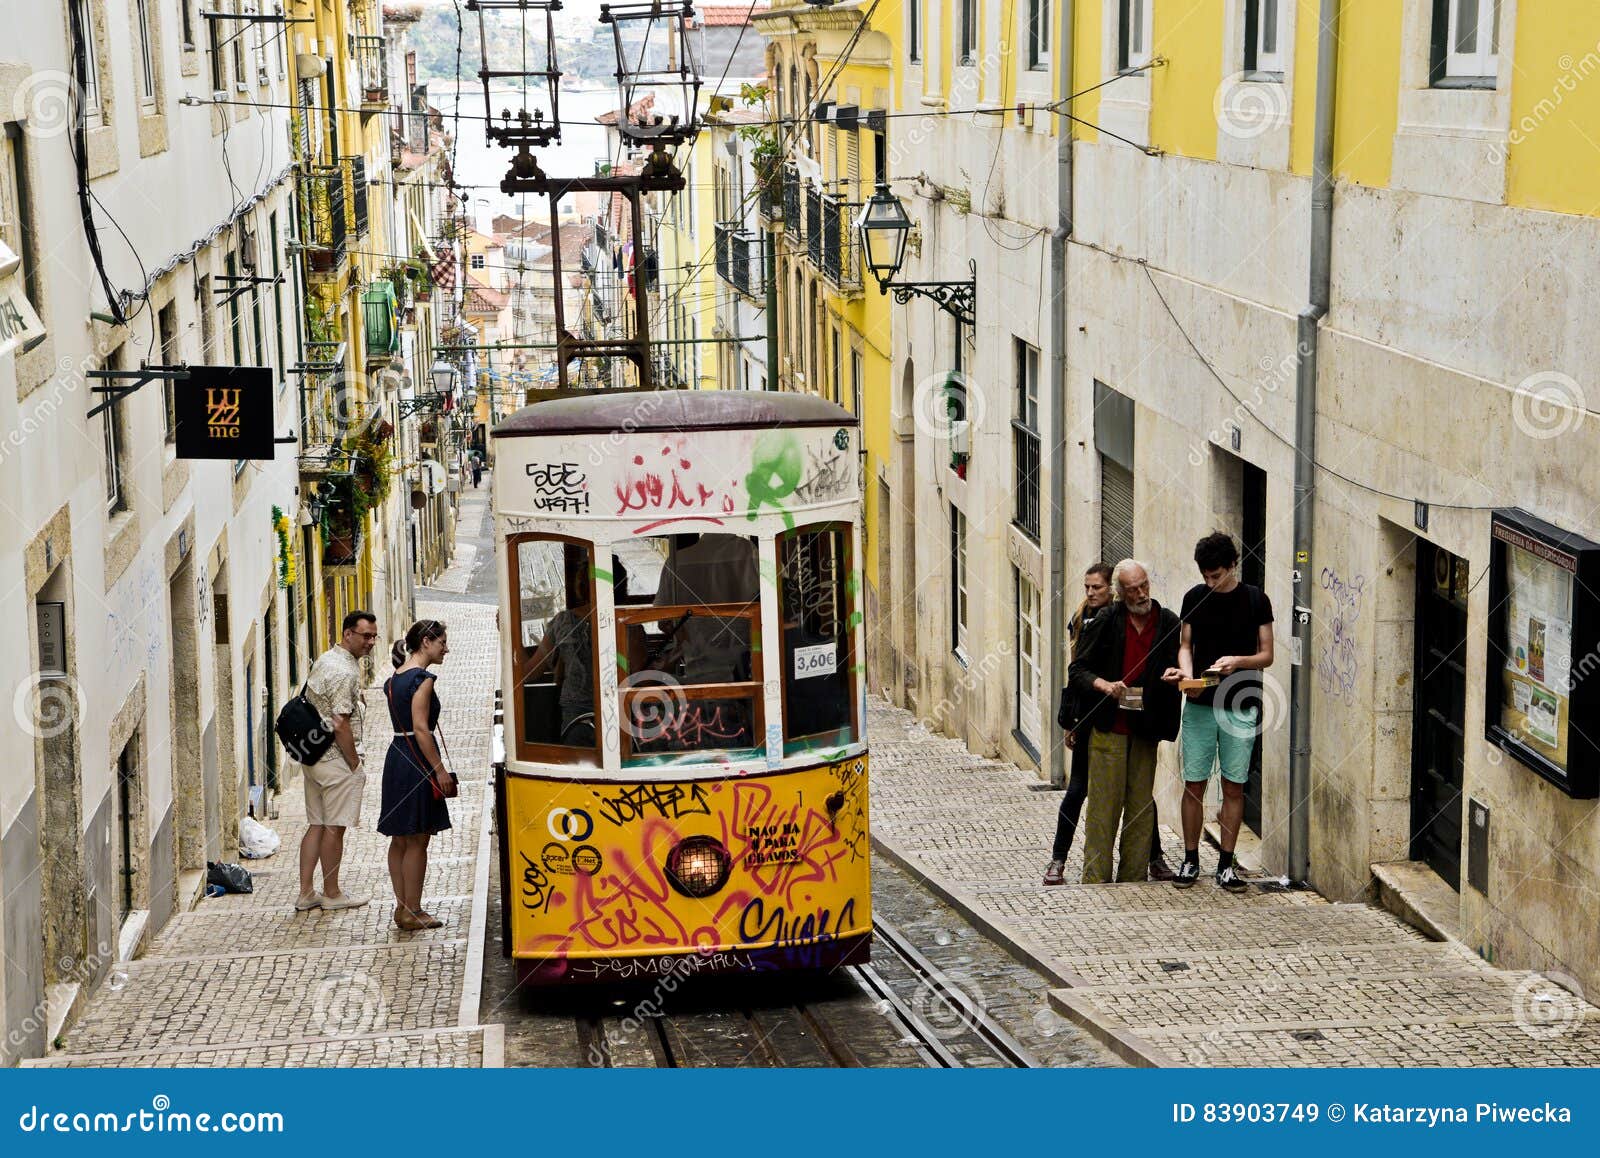 Tram giallo tipico, Lisbona, Portogallo. Tram giallo tipico sulla via di Lisbona, Portogallo